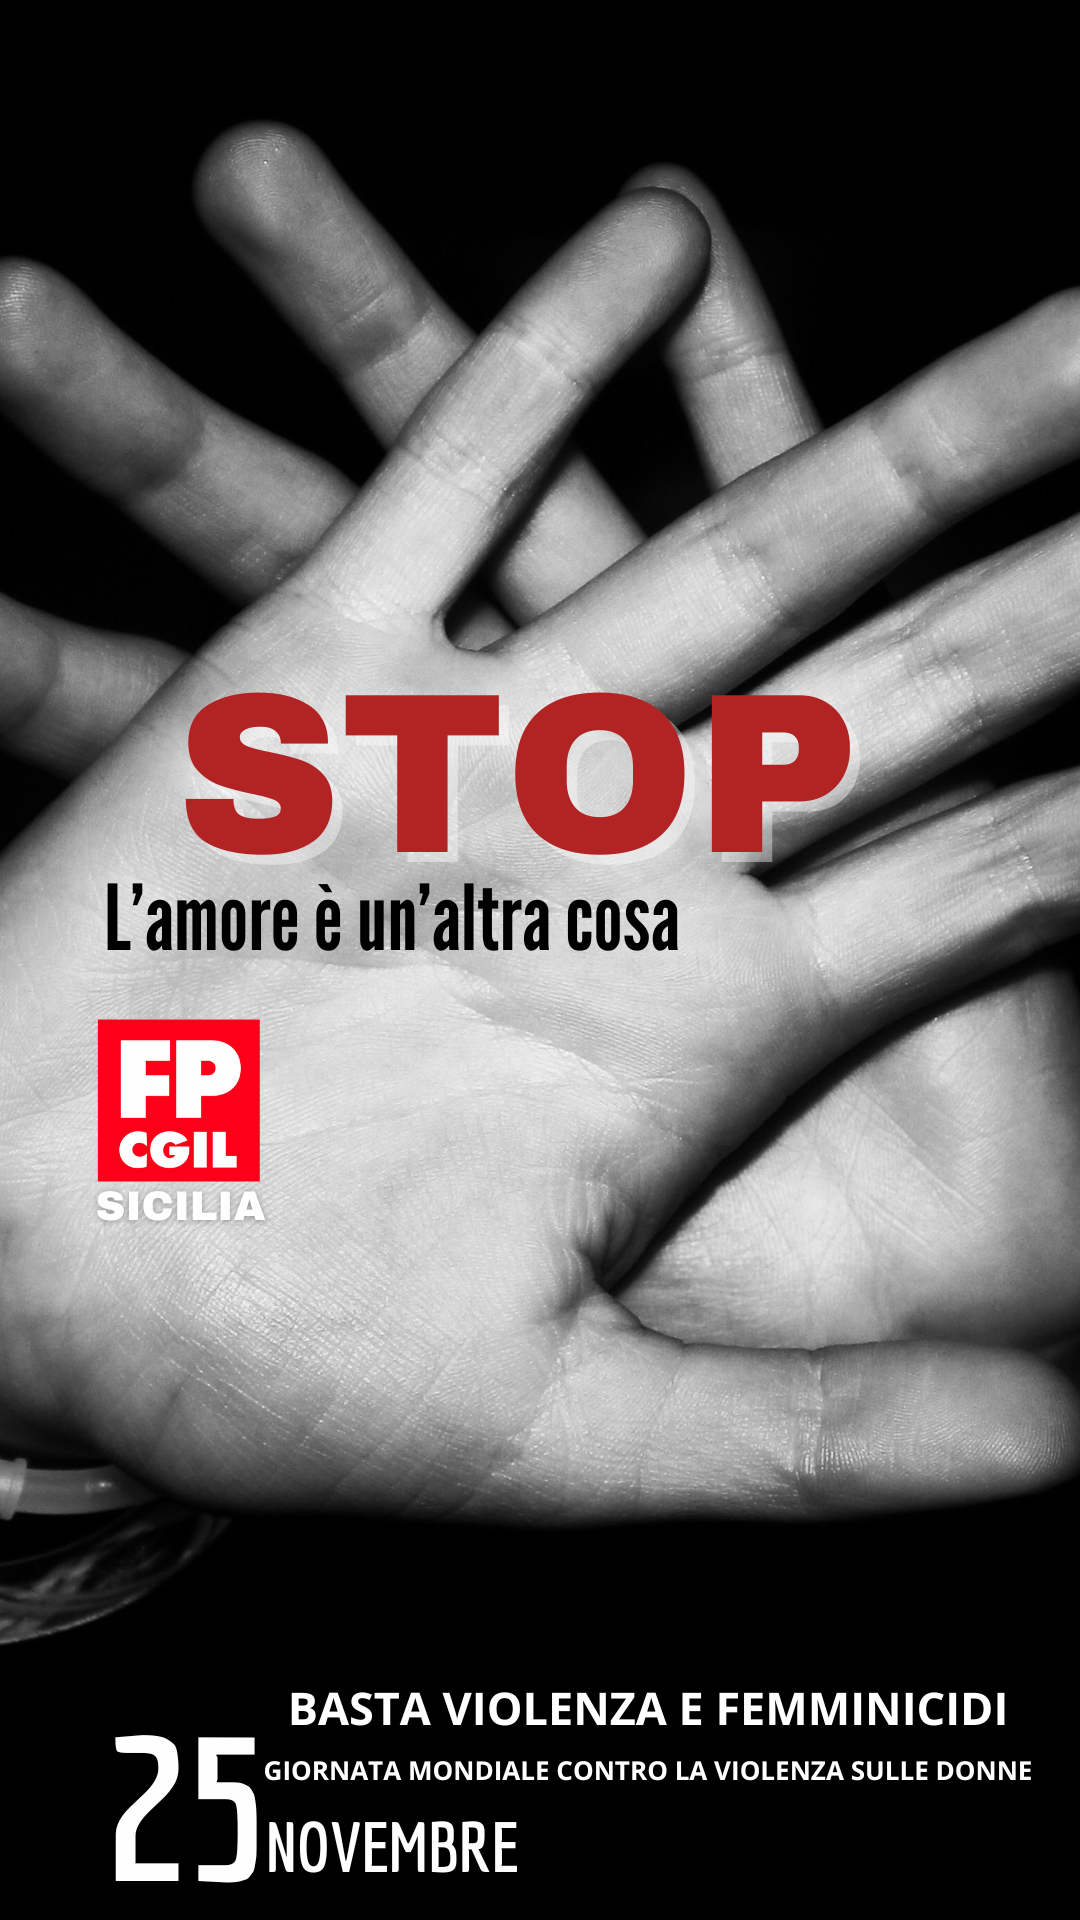 STOP FEMMINICIDI E VIOLENZA DI GENERE